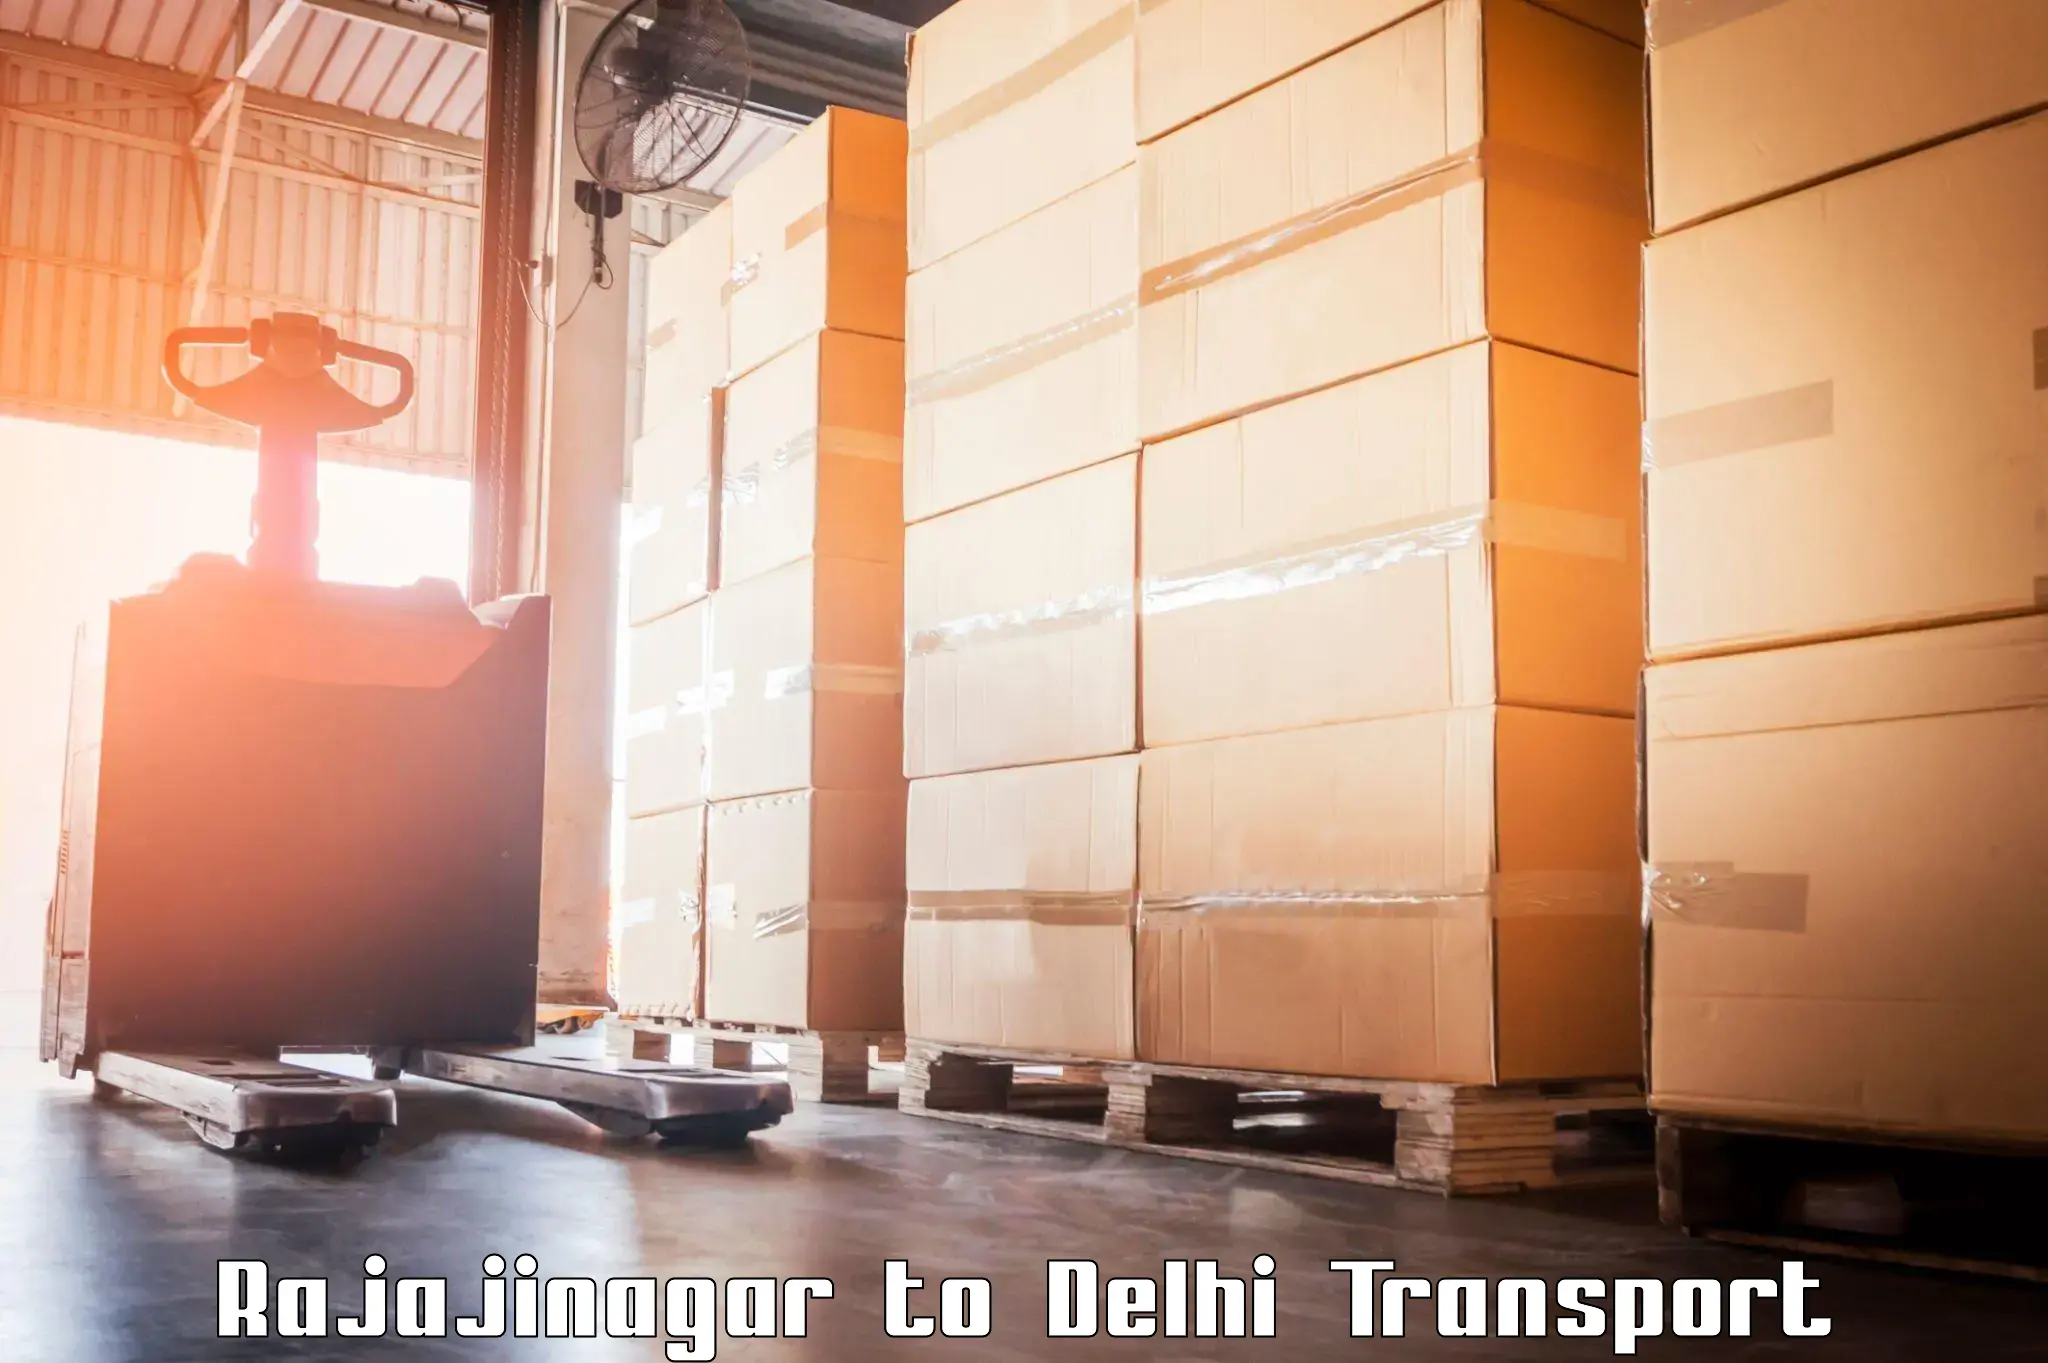 International cargo transportation services Rajajinagar to IIT Delhi